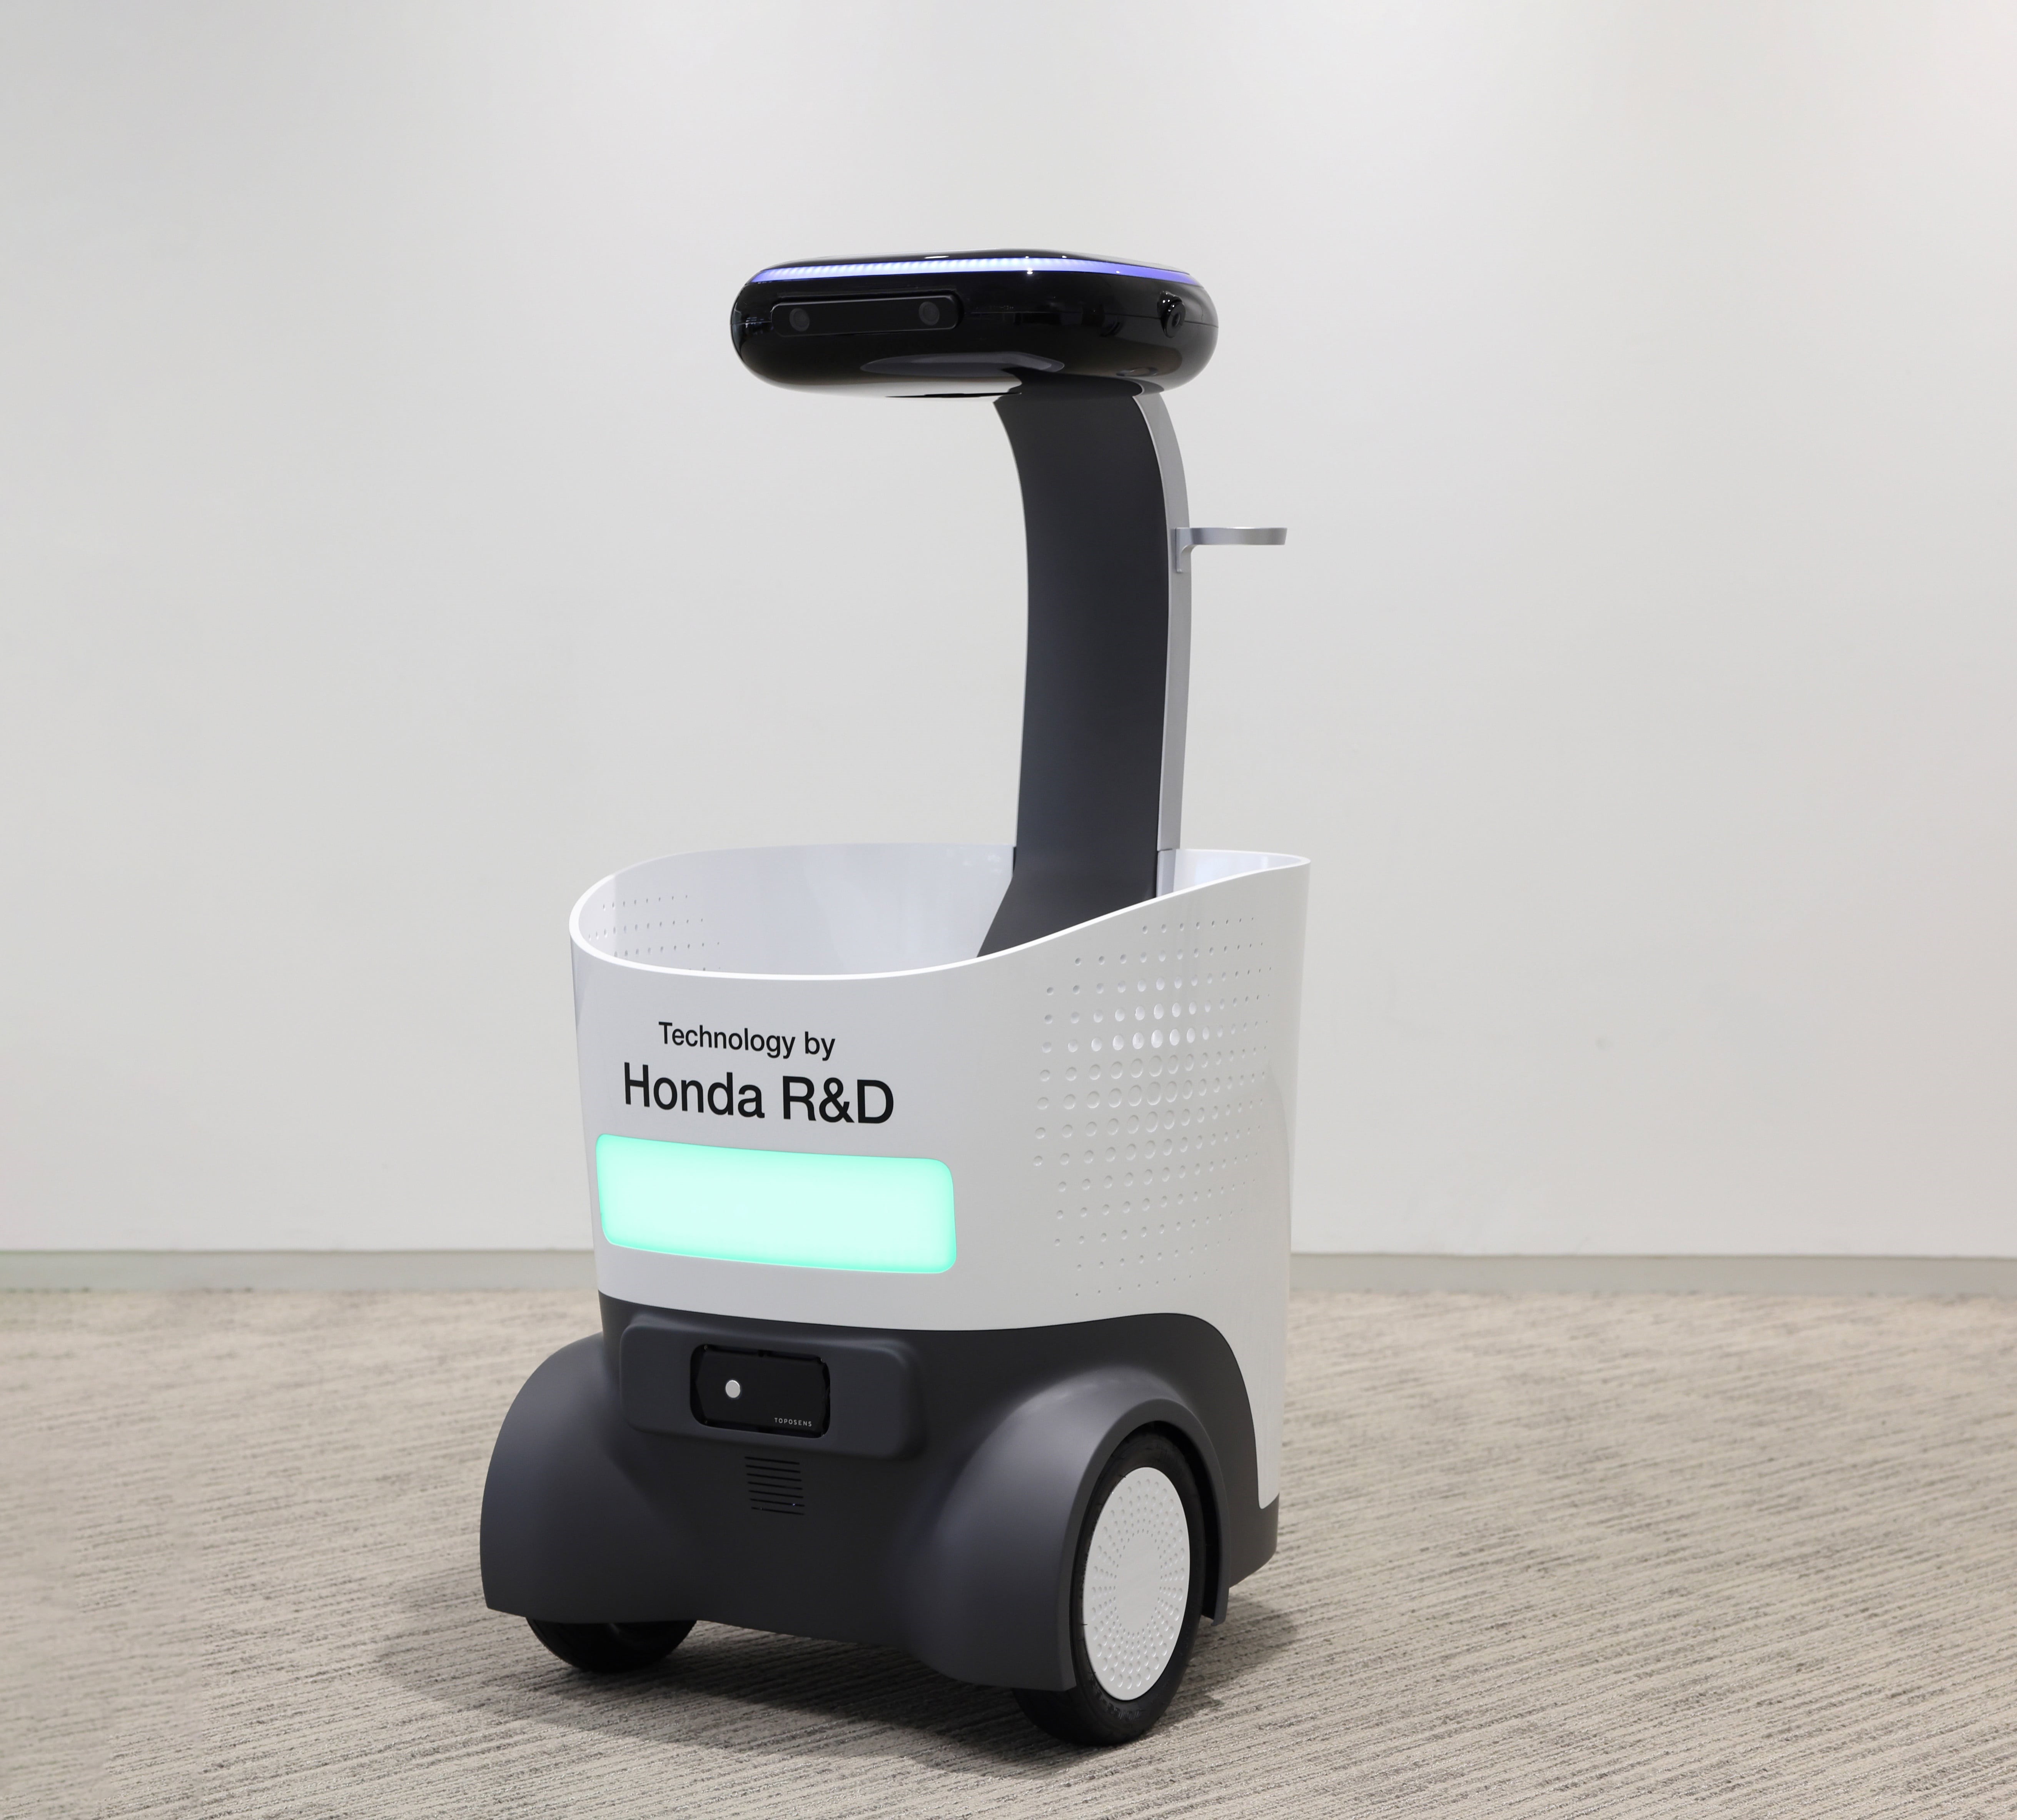 Honda, yapay zeka destekli yeni mobilite teknolojilerini tanıttı